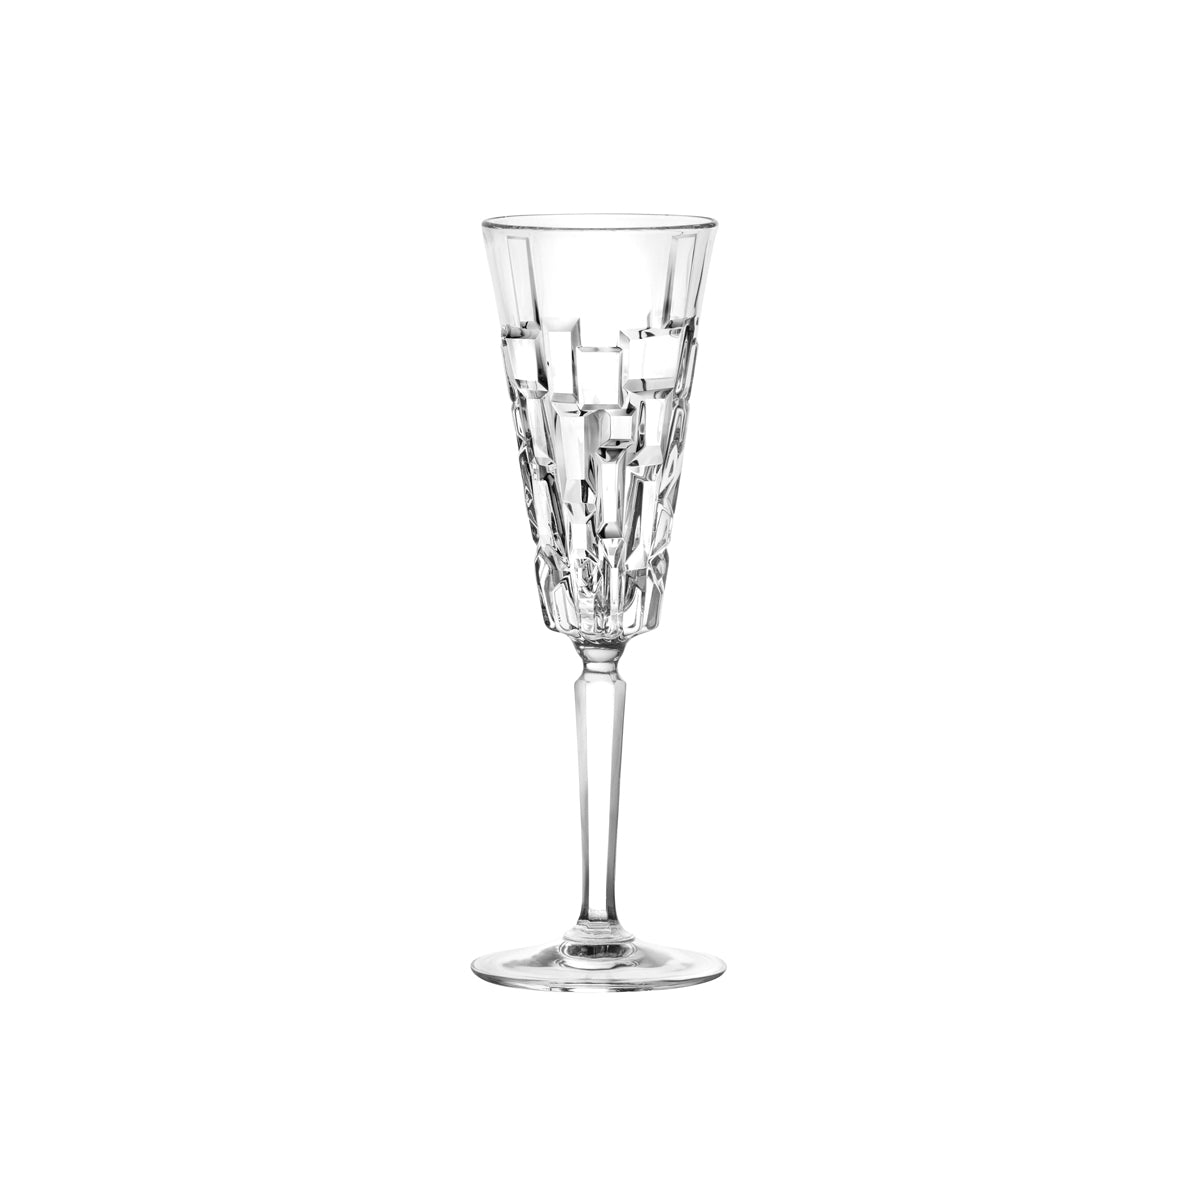 RCR363-904 RCR Cristalleria Etna Champagne Flute 190ml Tomkin Australia Hospitality Supplies